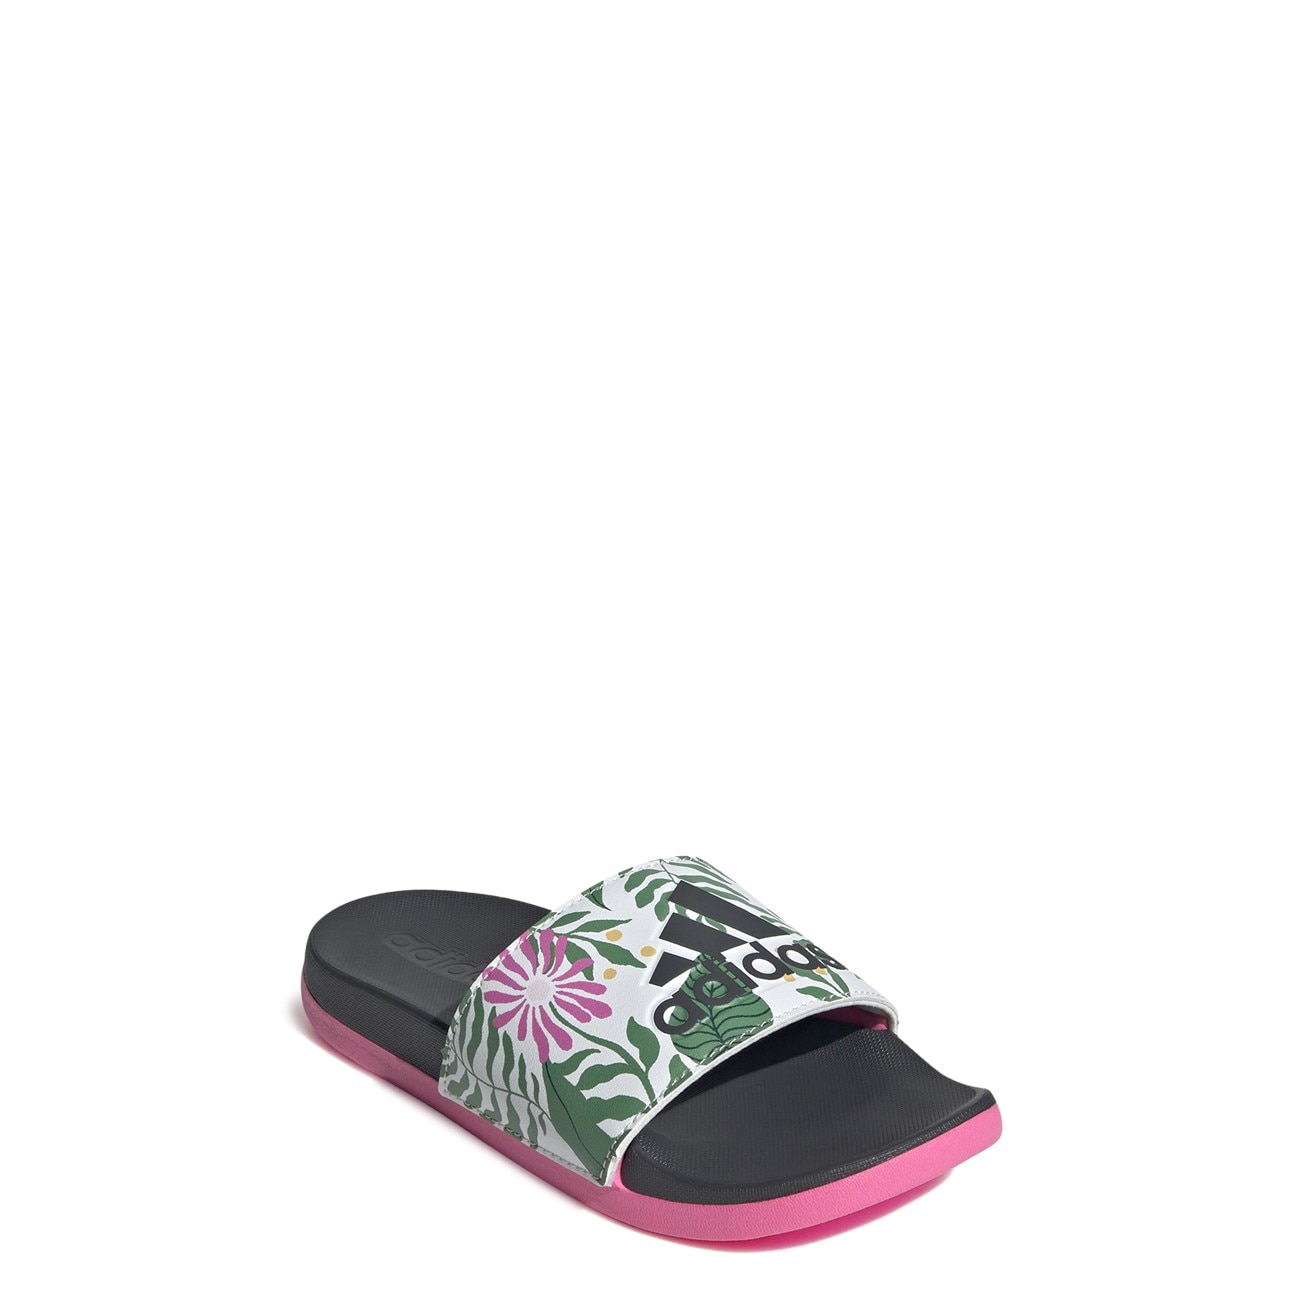 Youth Girls' Adilette Comfort Slide Sandal